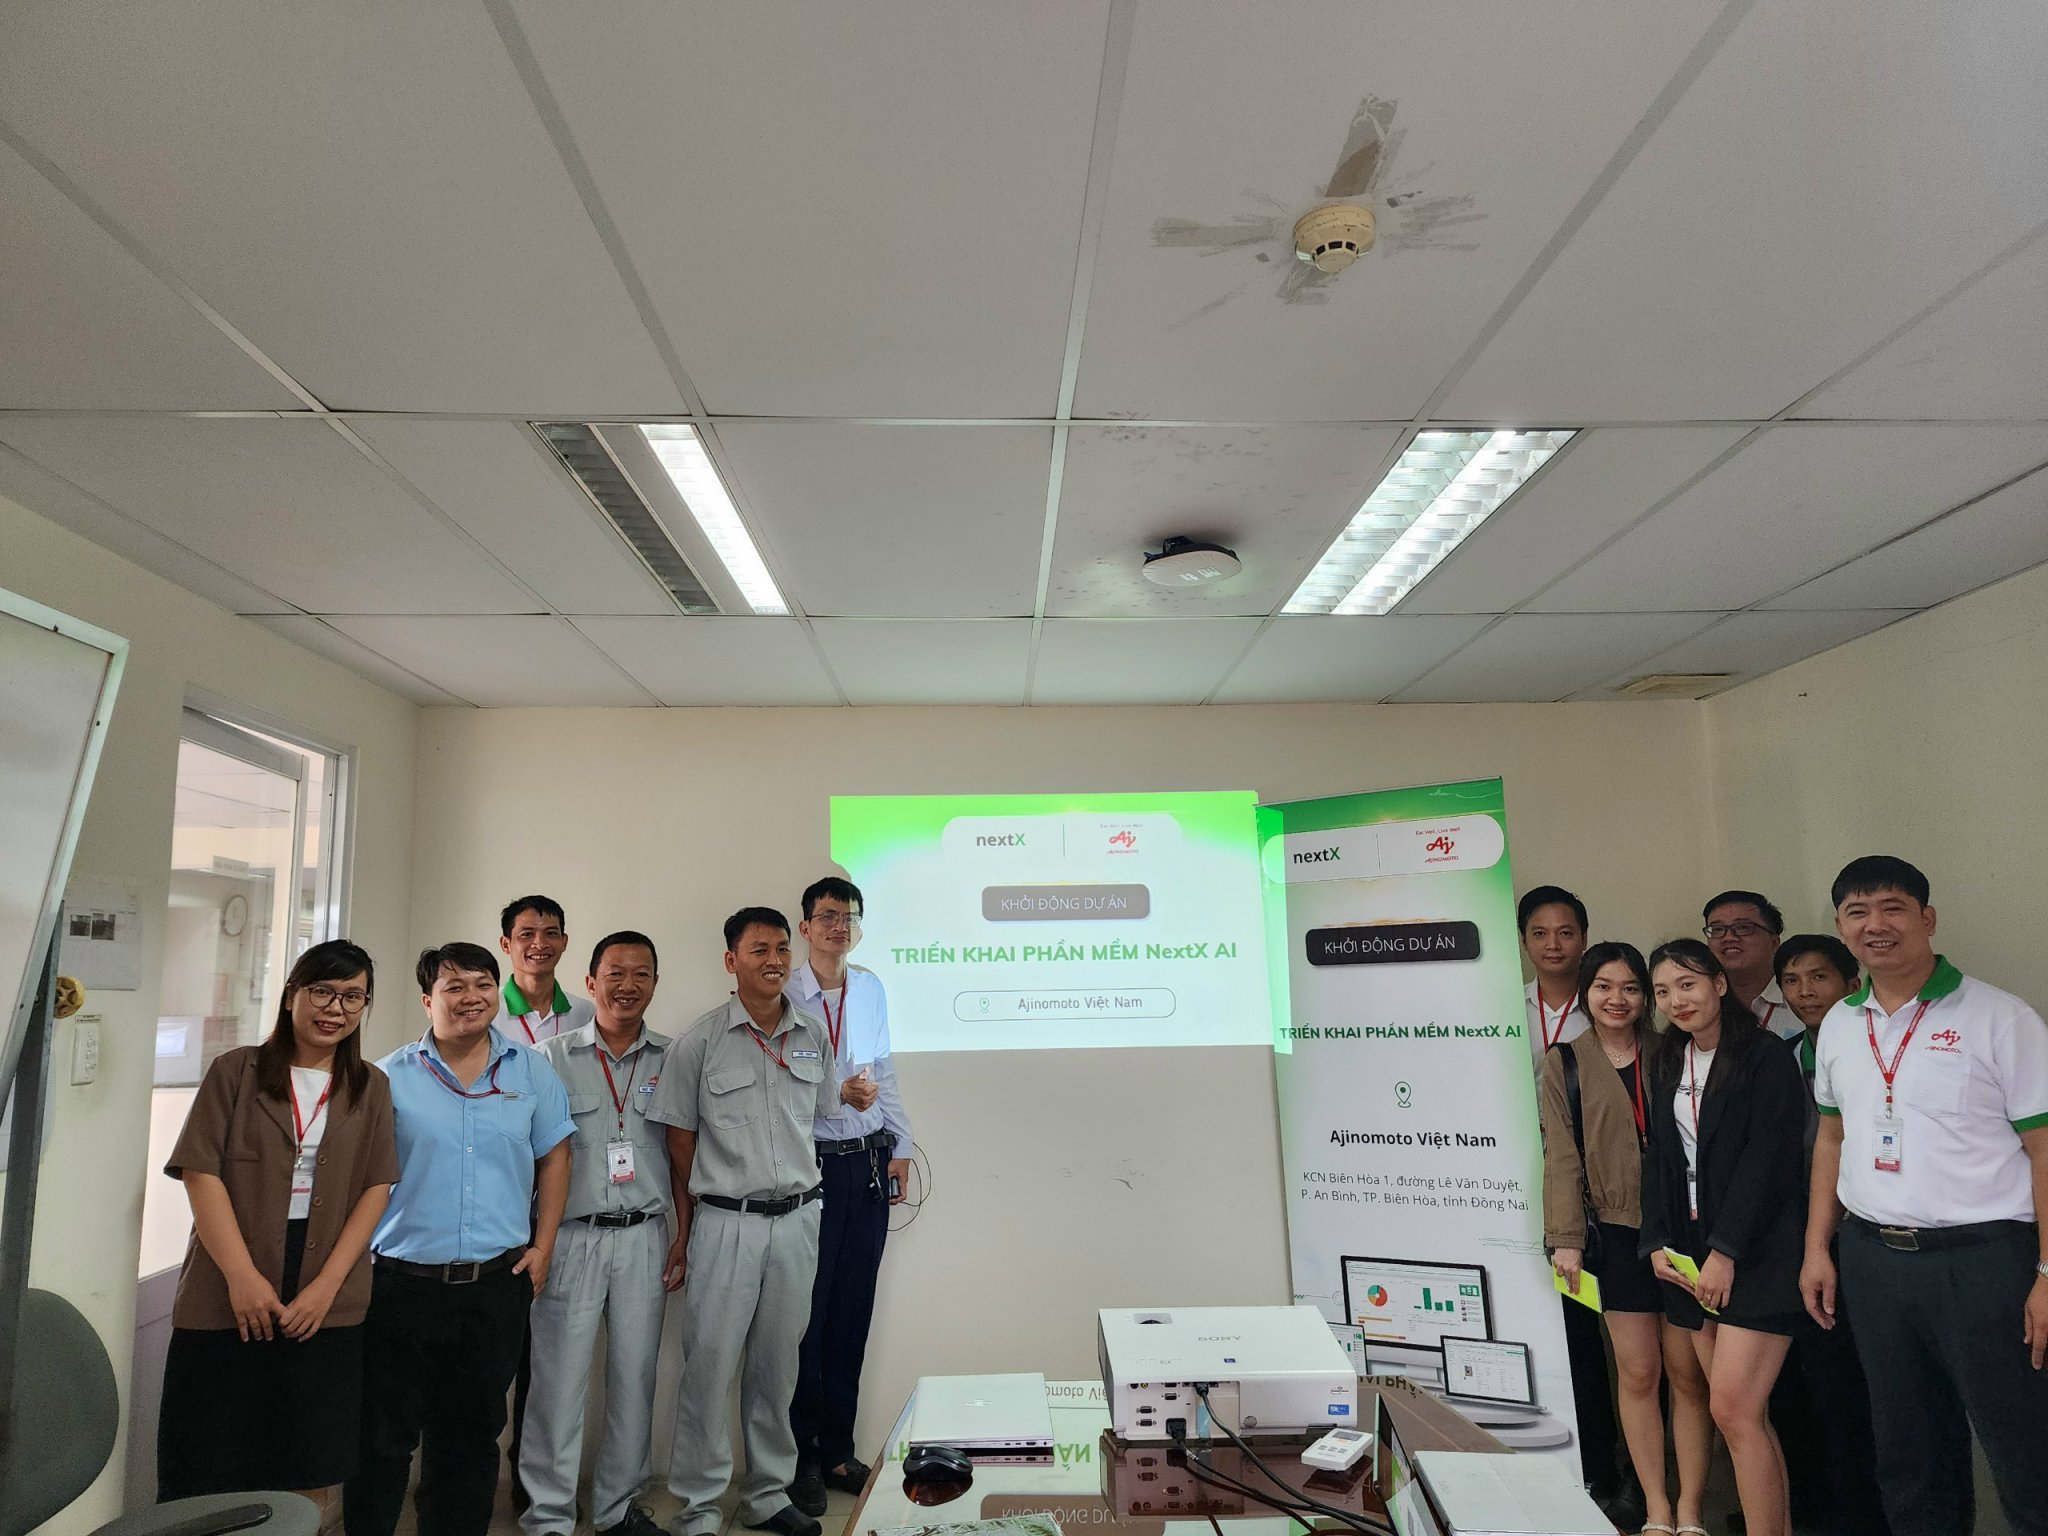 NextX chính thức kickoff dự án triển khai giải pháp NextX AI cho Ajinomoto Việt Nam